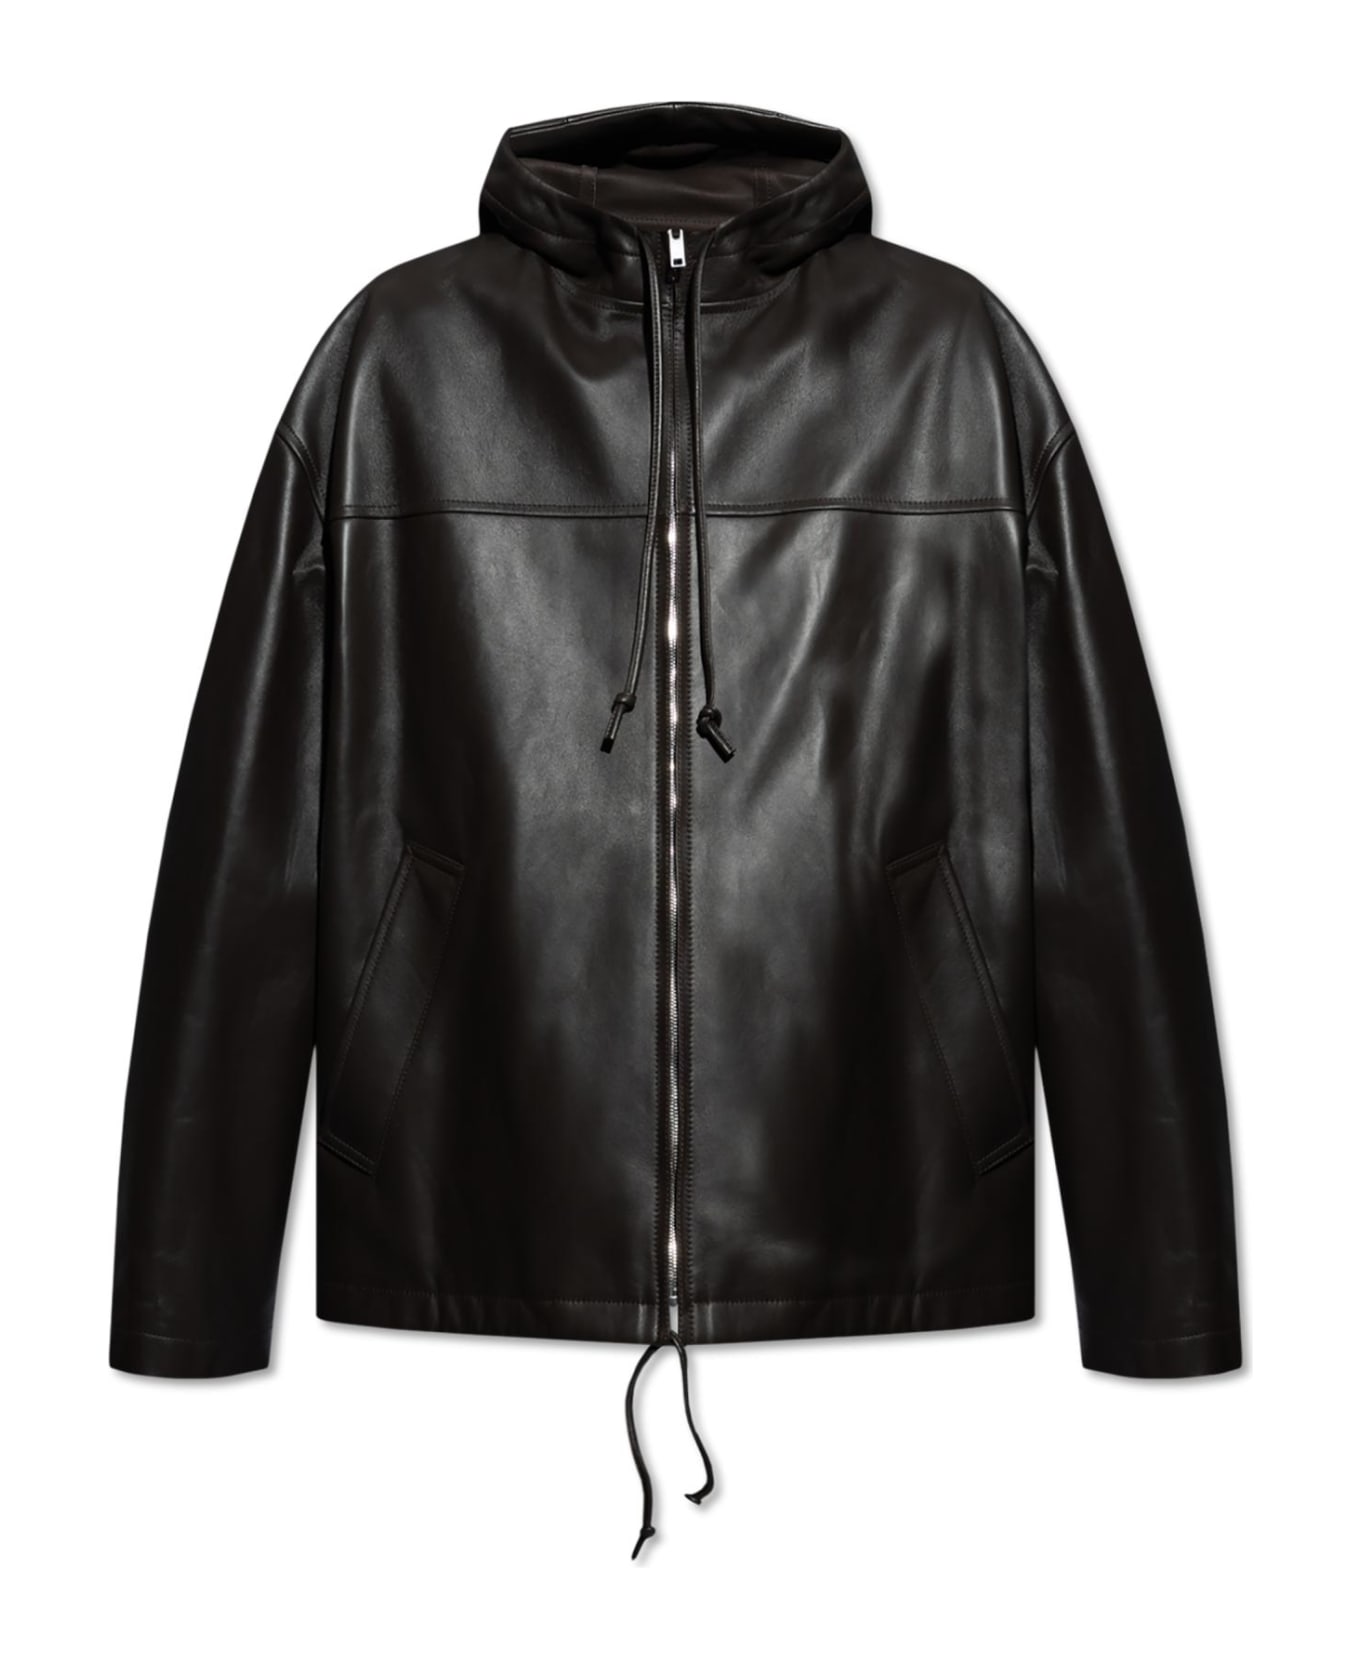 Bottega Veneta Hooded Leather Jacket - BROWN